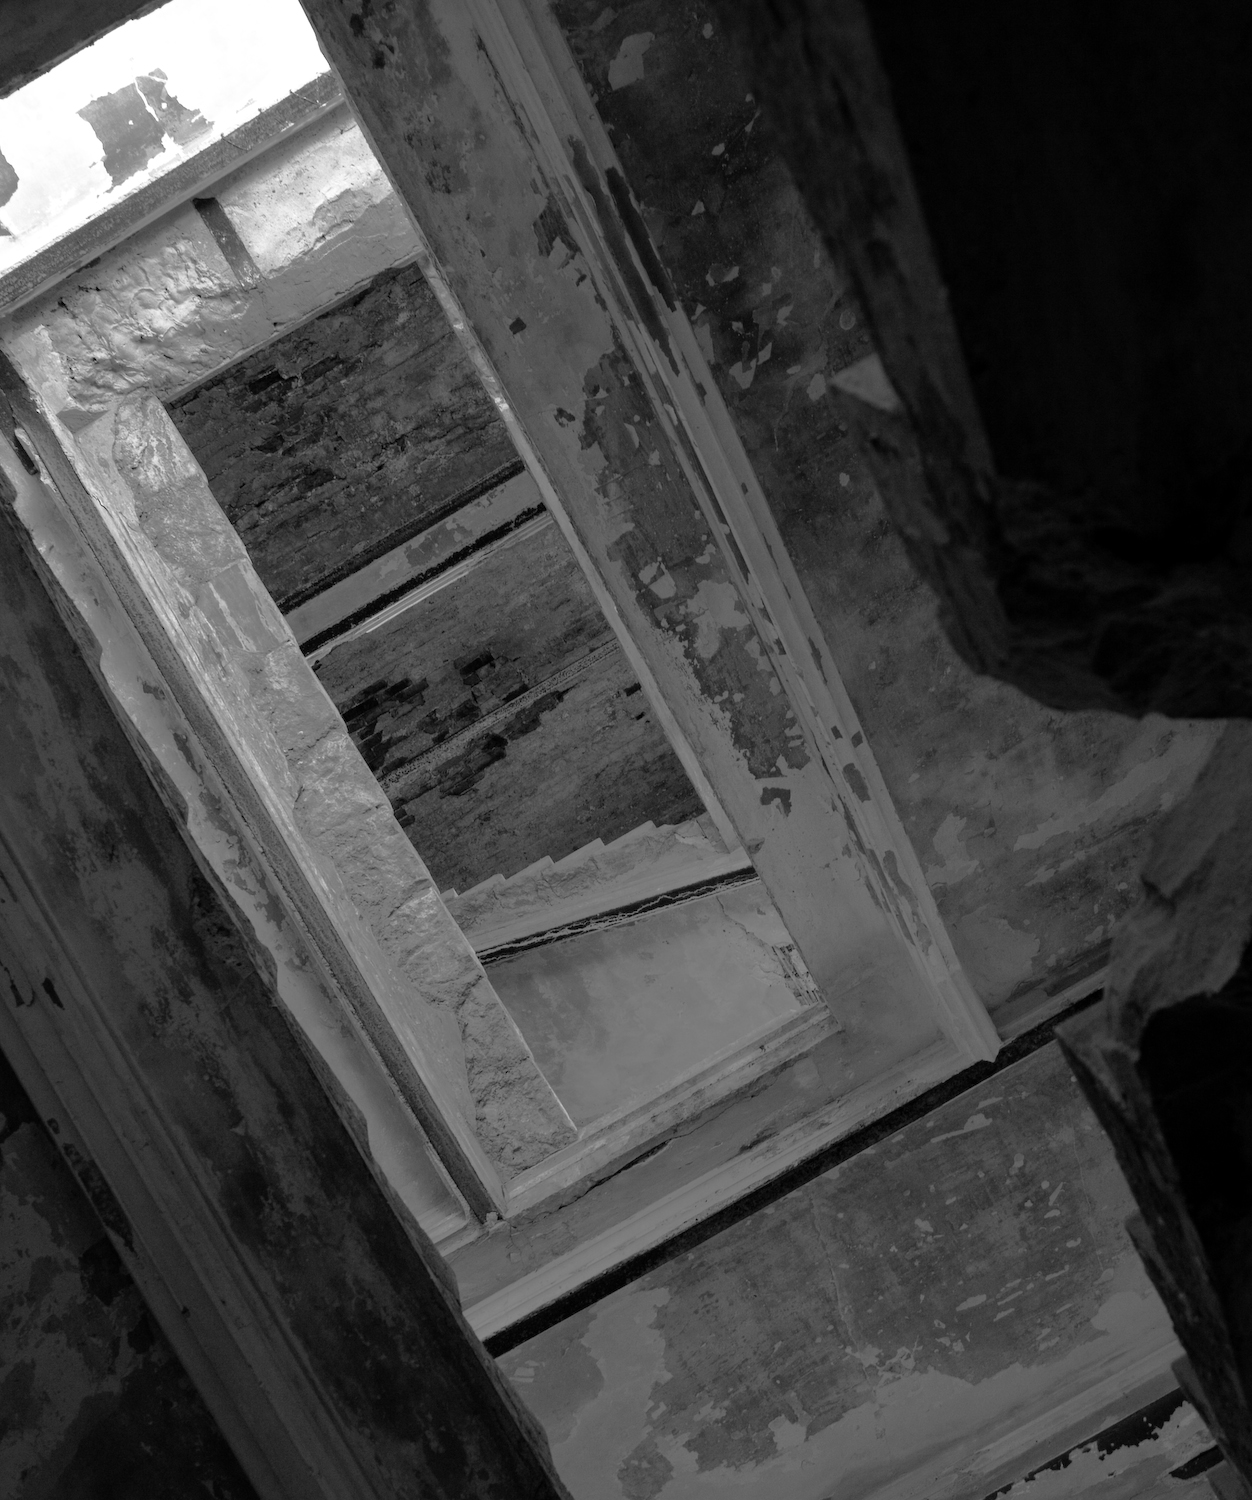 Лестница. Вид снизу на когда-то красивую, каменную лестницу внутри замка Храповицкого. Она ведет на второй этаж в жилой части главного здания усадьбы Муромцево.